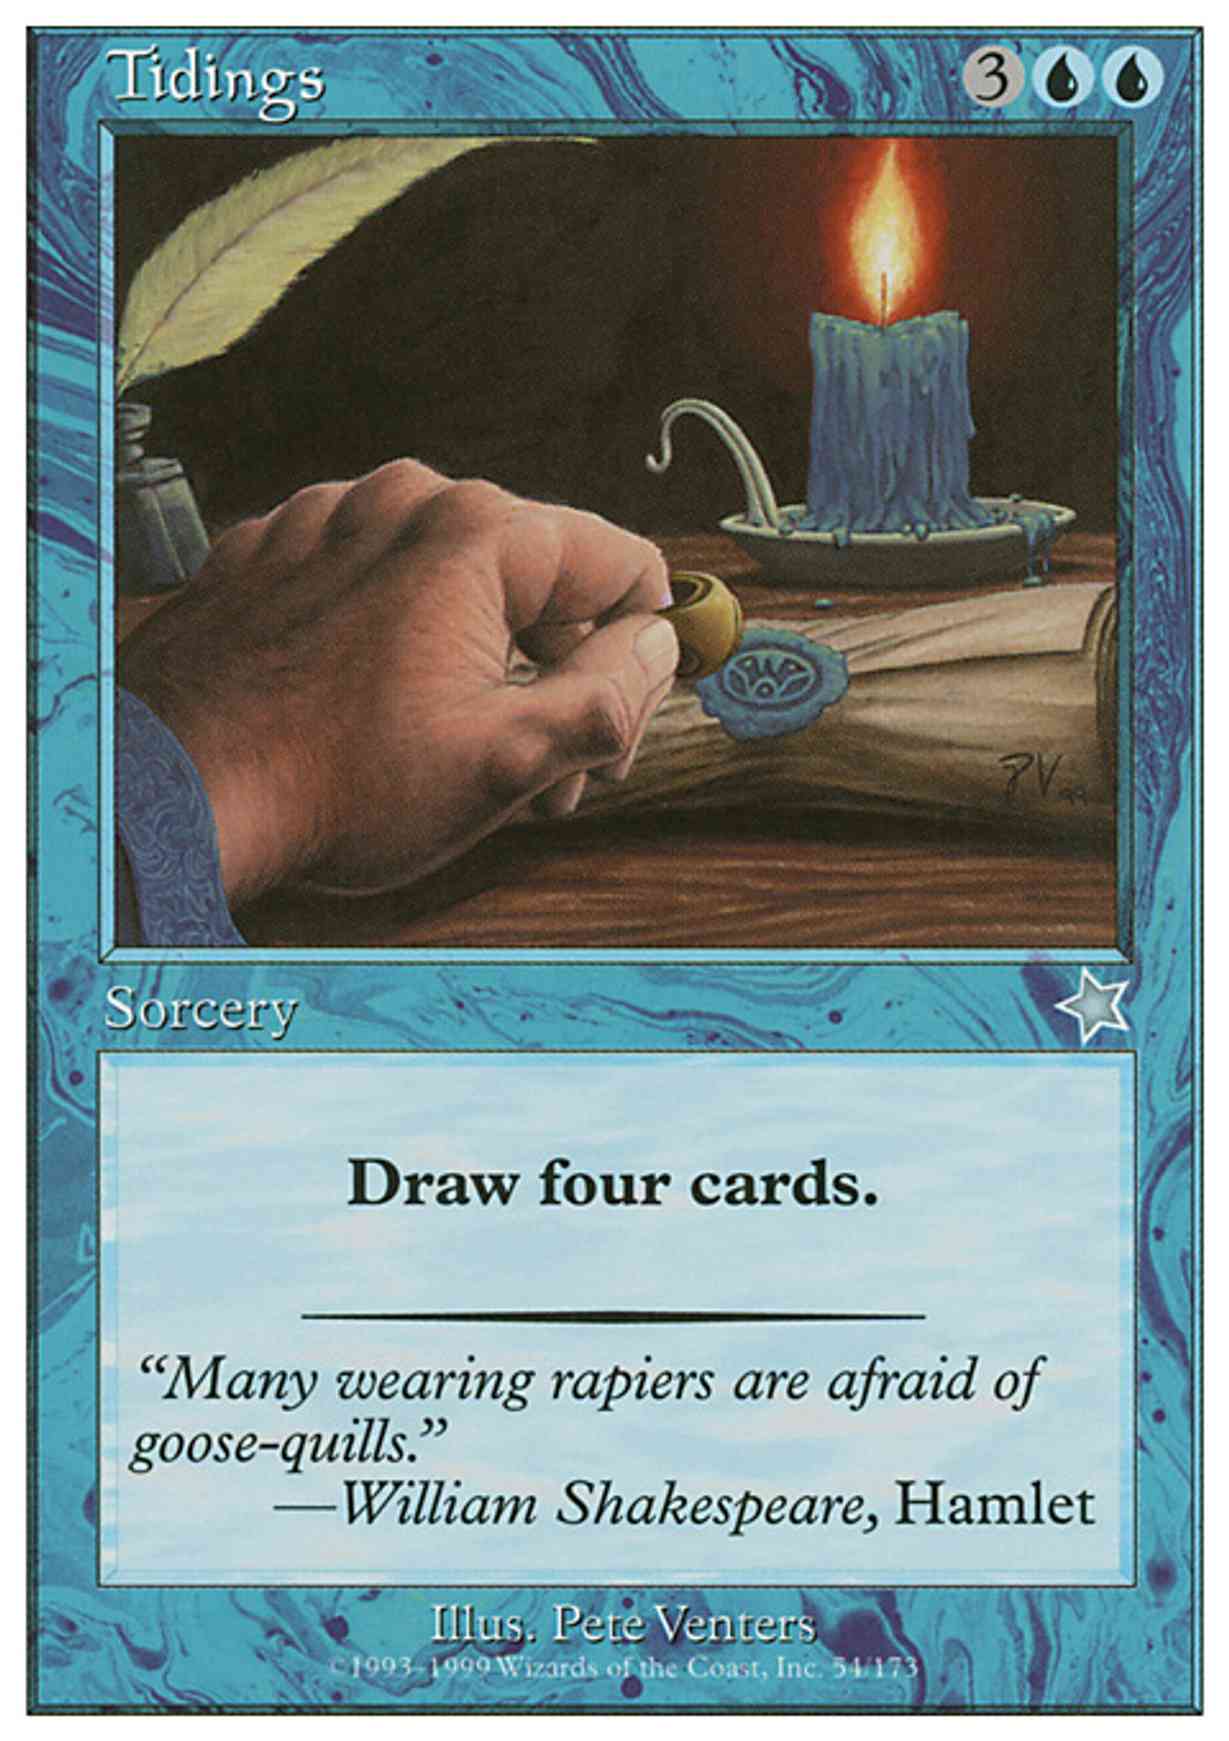 Tidings magic card front